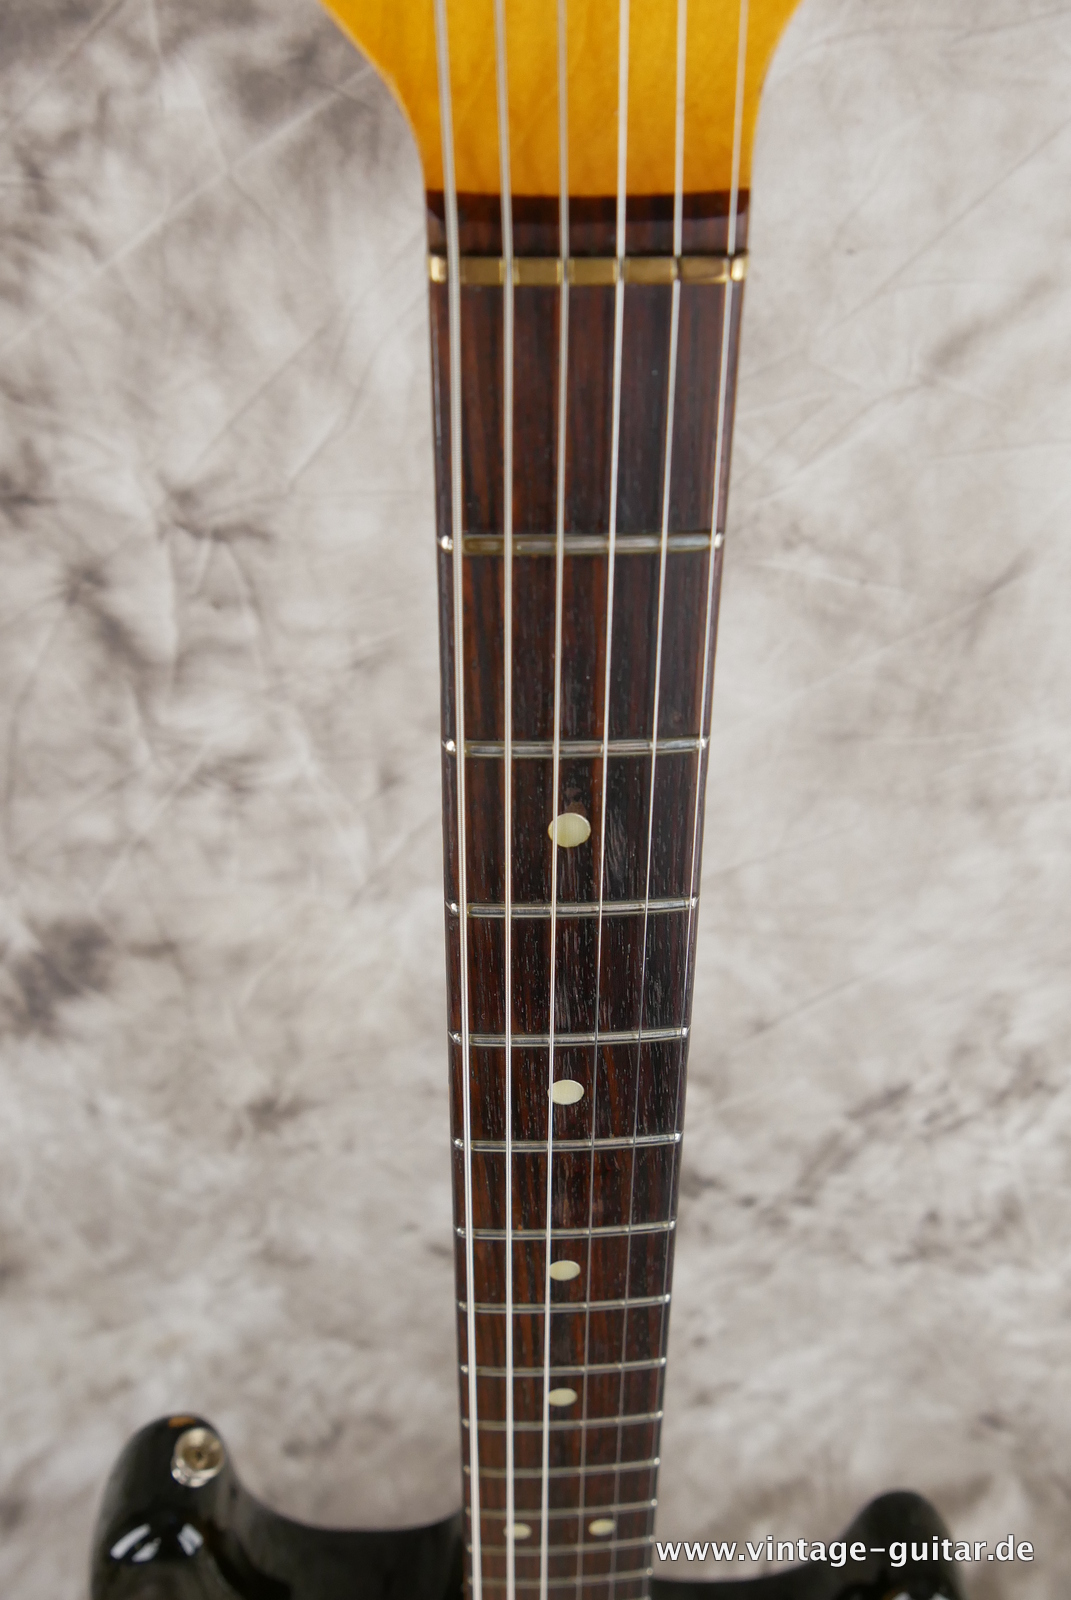 Fender-Stratocaster-1971-sunburst-4-hole-011.JPG